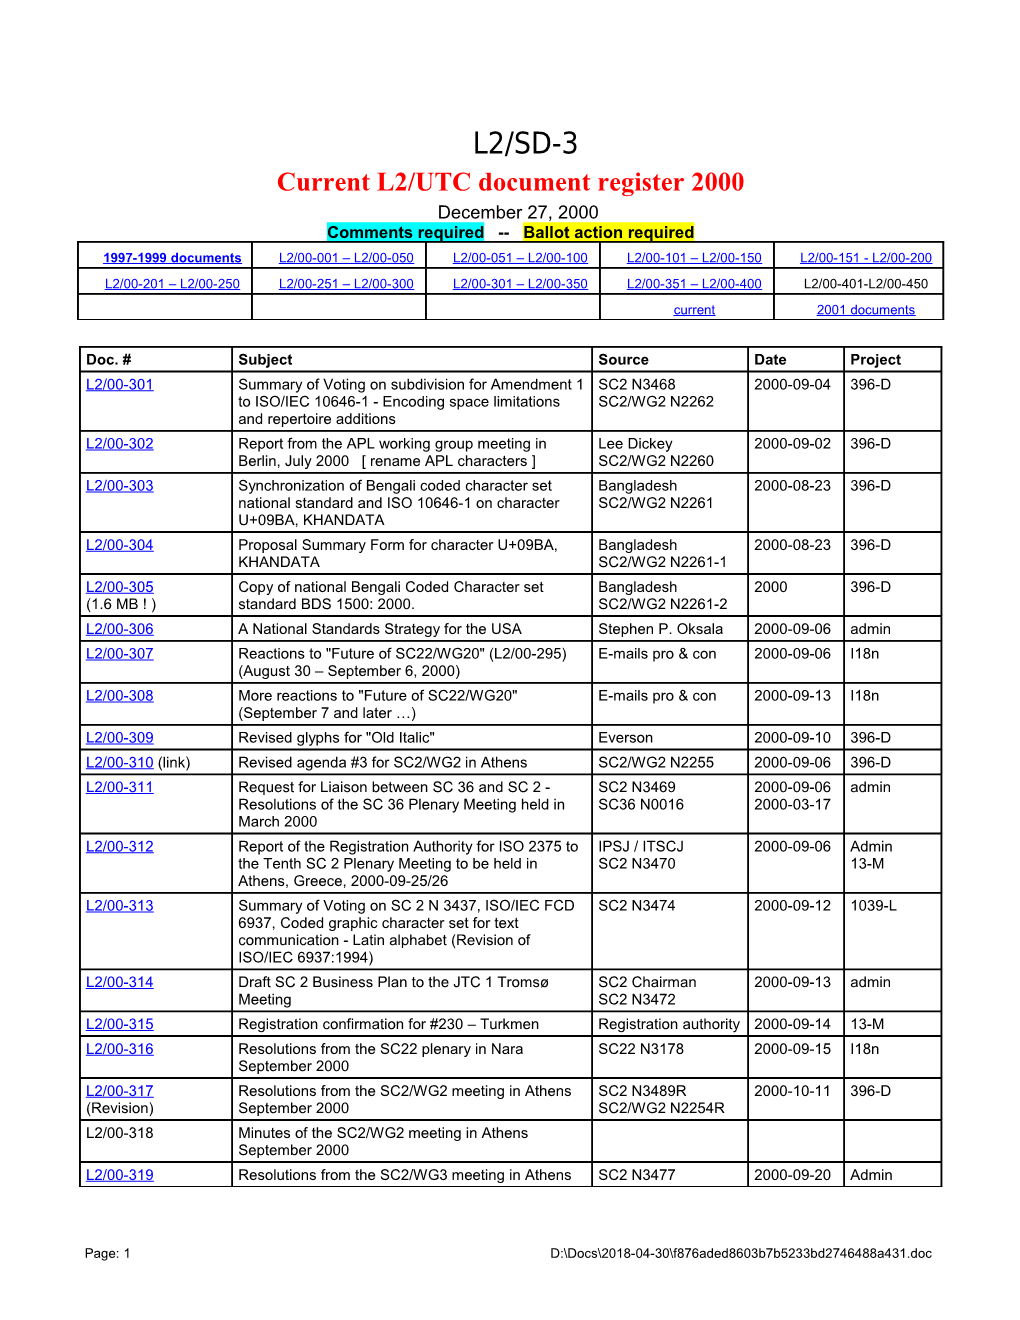 Current L2/UTC Document Register 2000